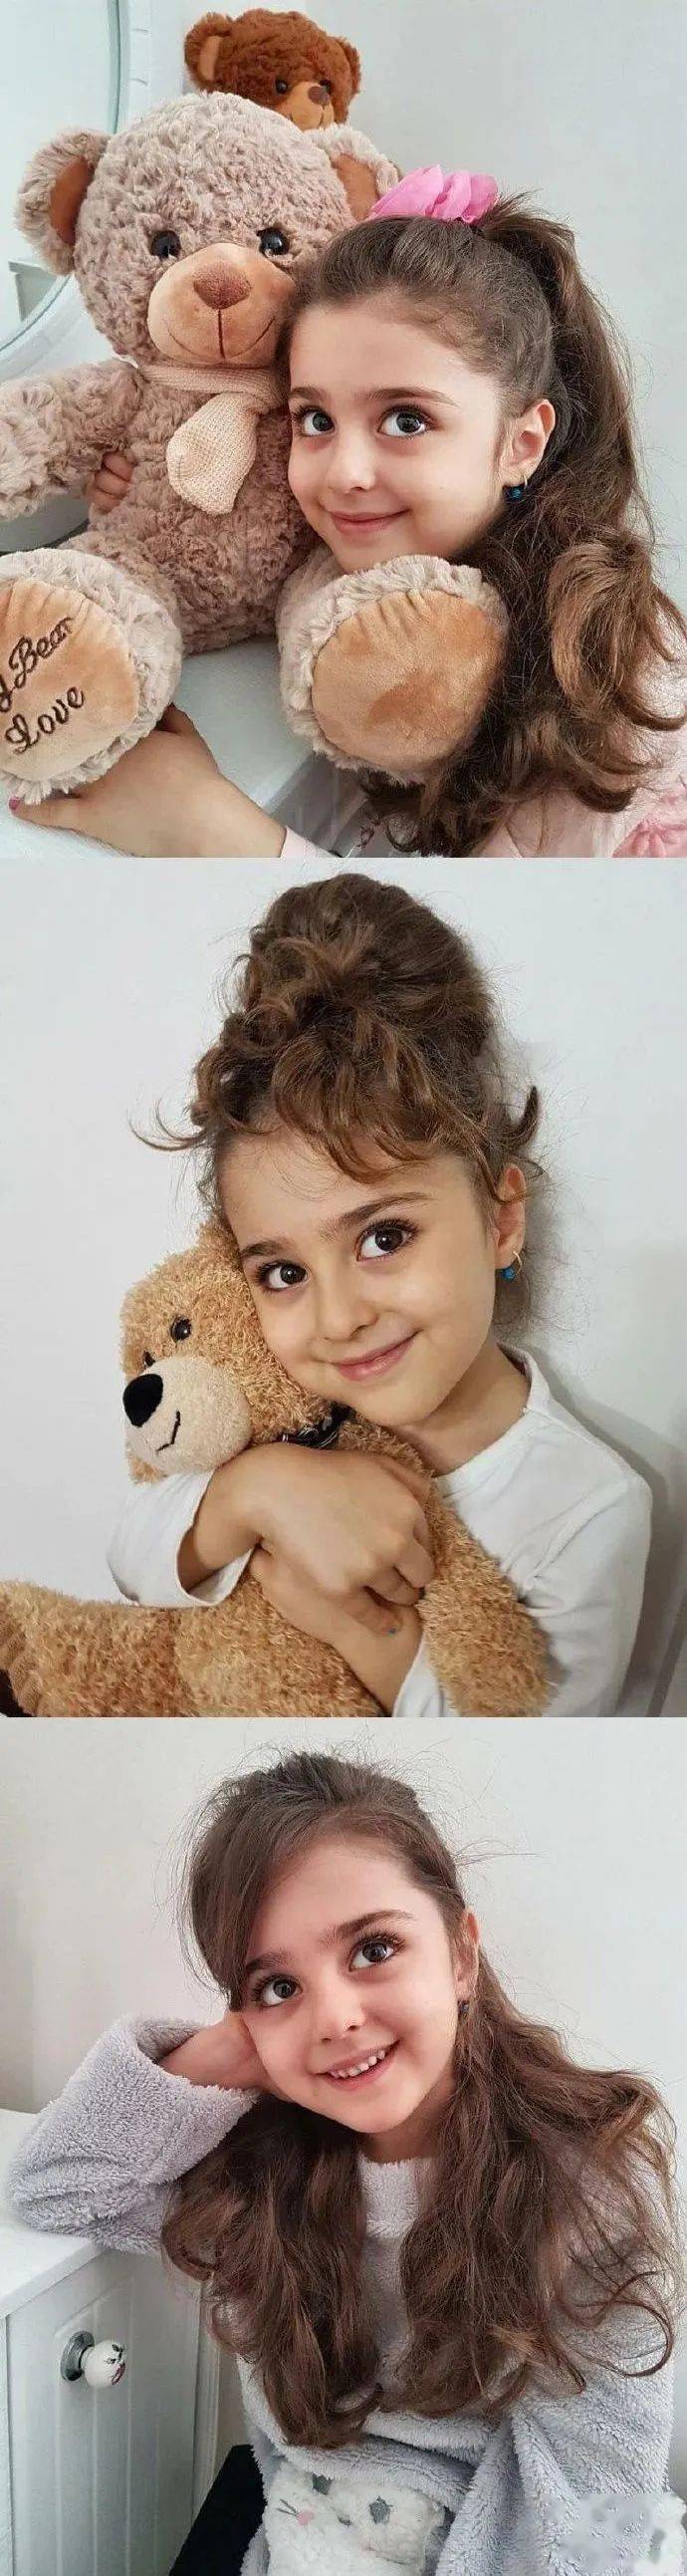 伊朗8岁小女孩被称为全球最美!因为太美,父亲辞职做贴身保镖